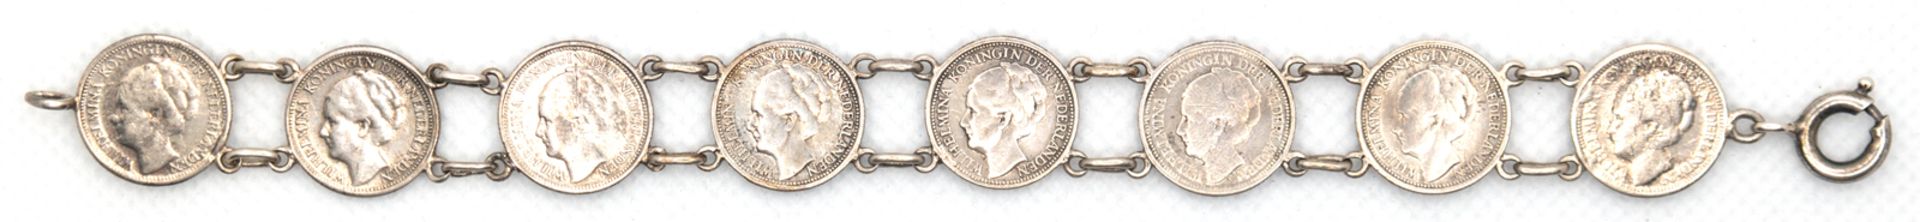 Münzarmband, Silber, 10 Cents Stücke ,Wilhelmina Königin der Niederlande von 1936, 1937, 1938, 1941